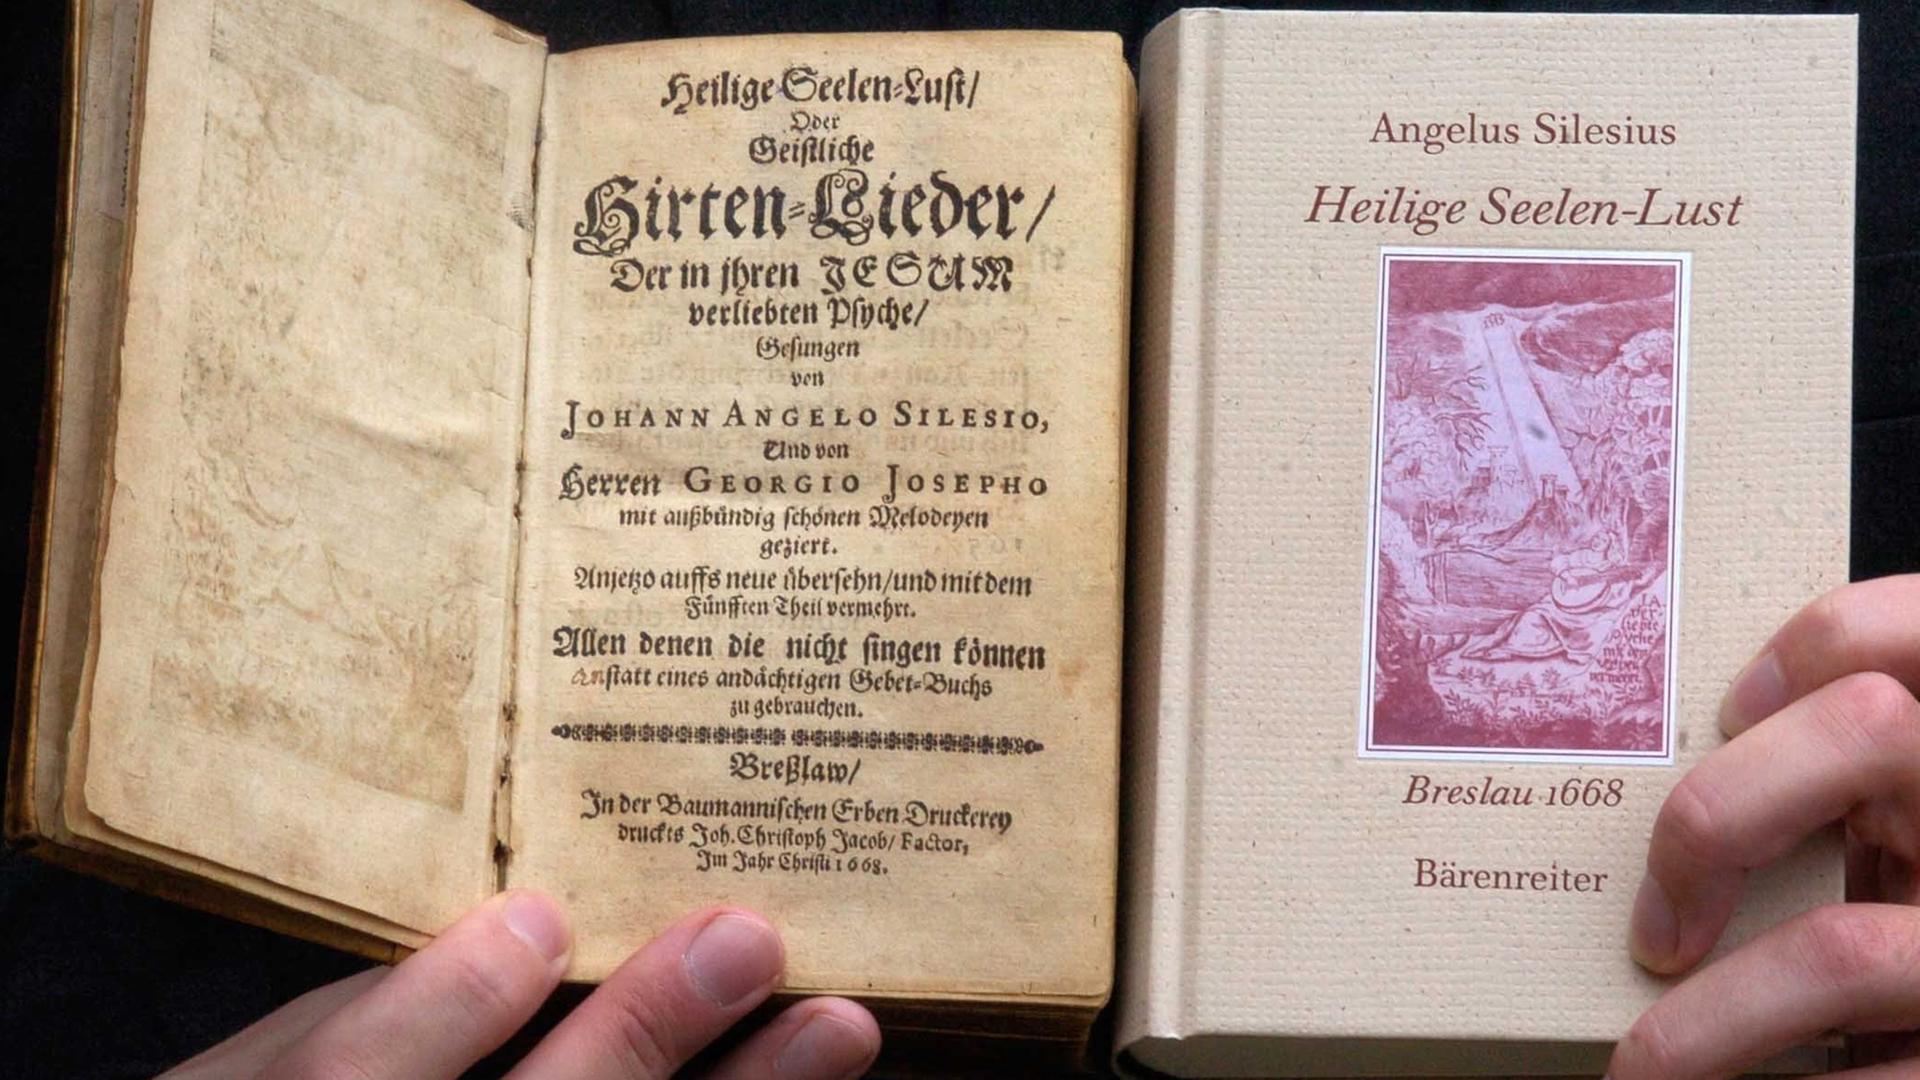 Das Original (l) und ein Reprint der "Hirten-Lieder" von Angelus Silesius